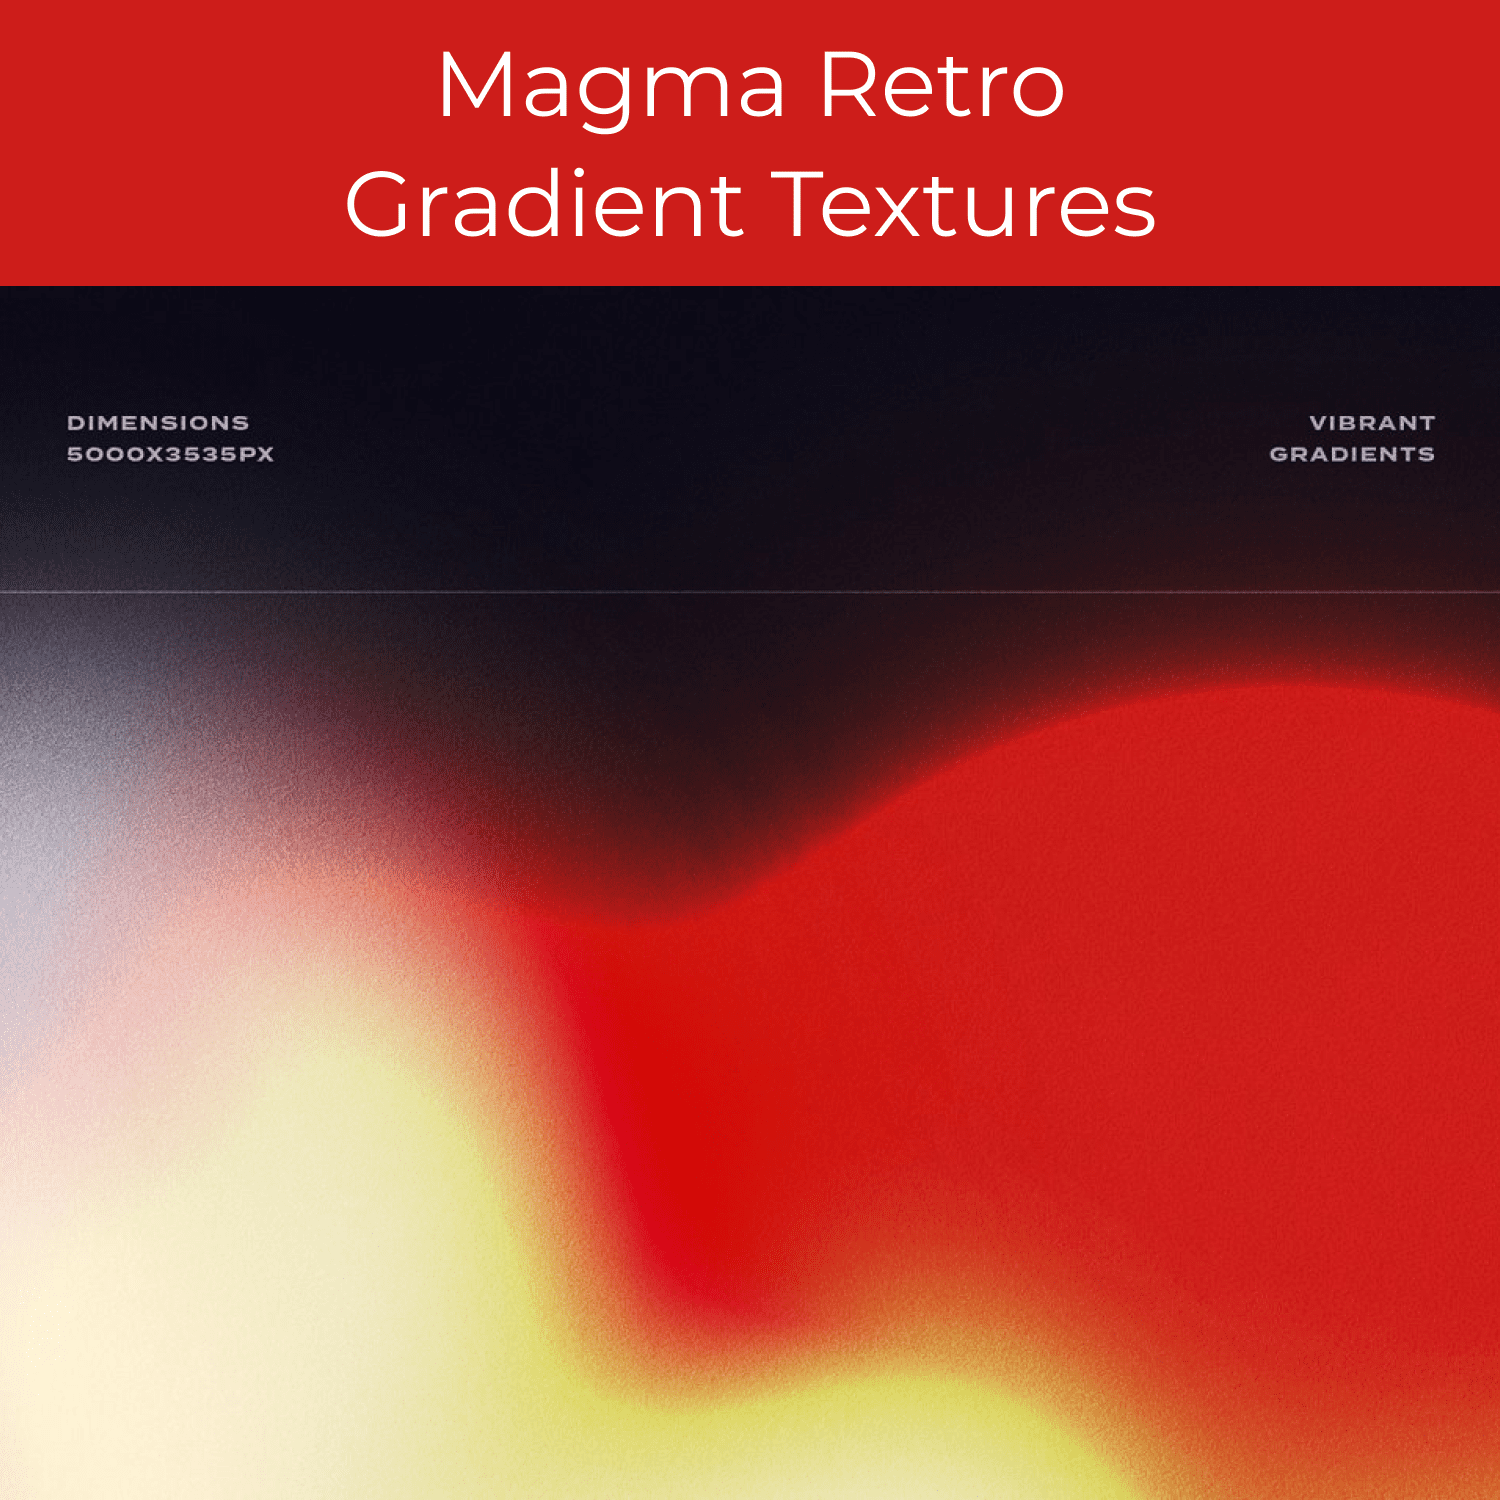 Magma Retro Gradient Textures cover.